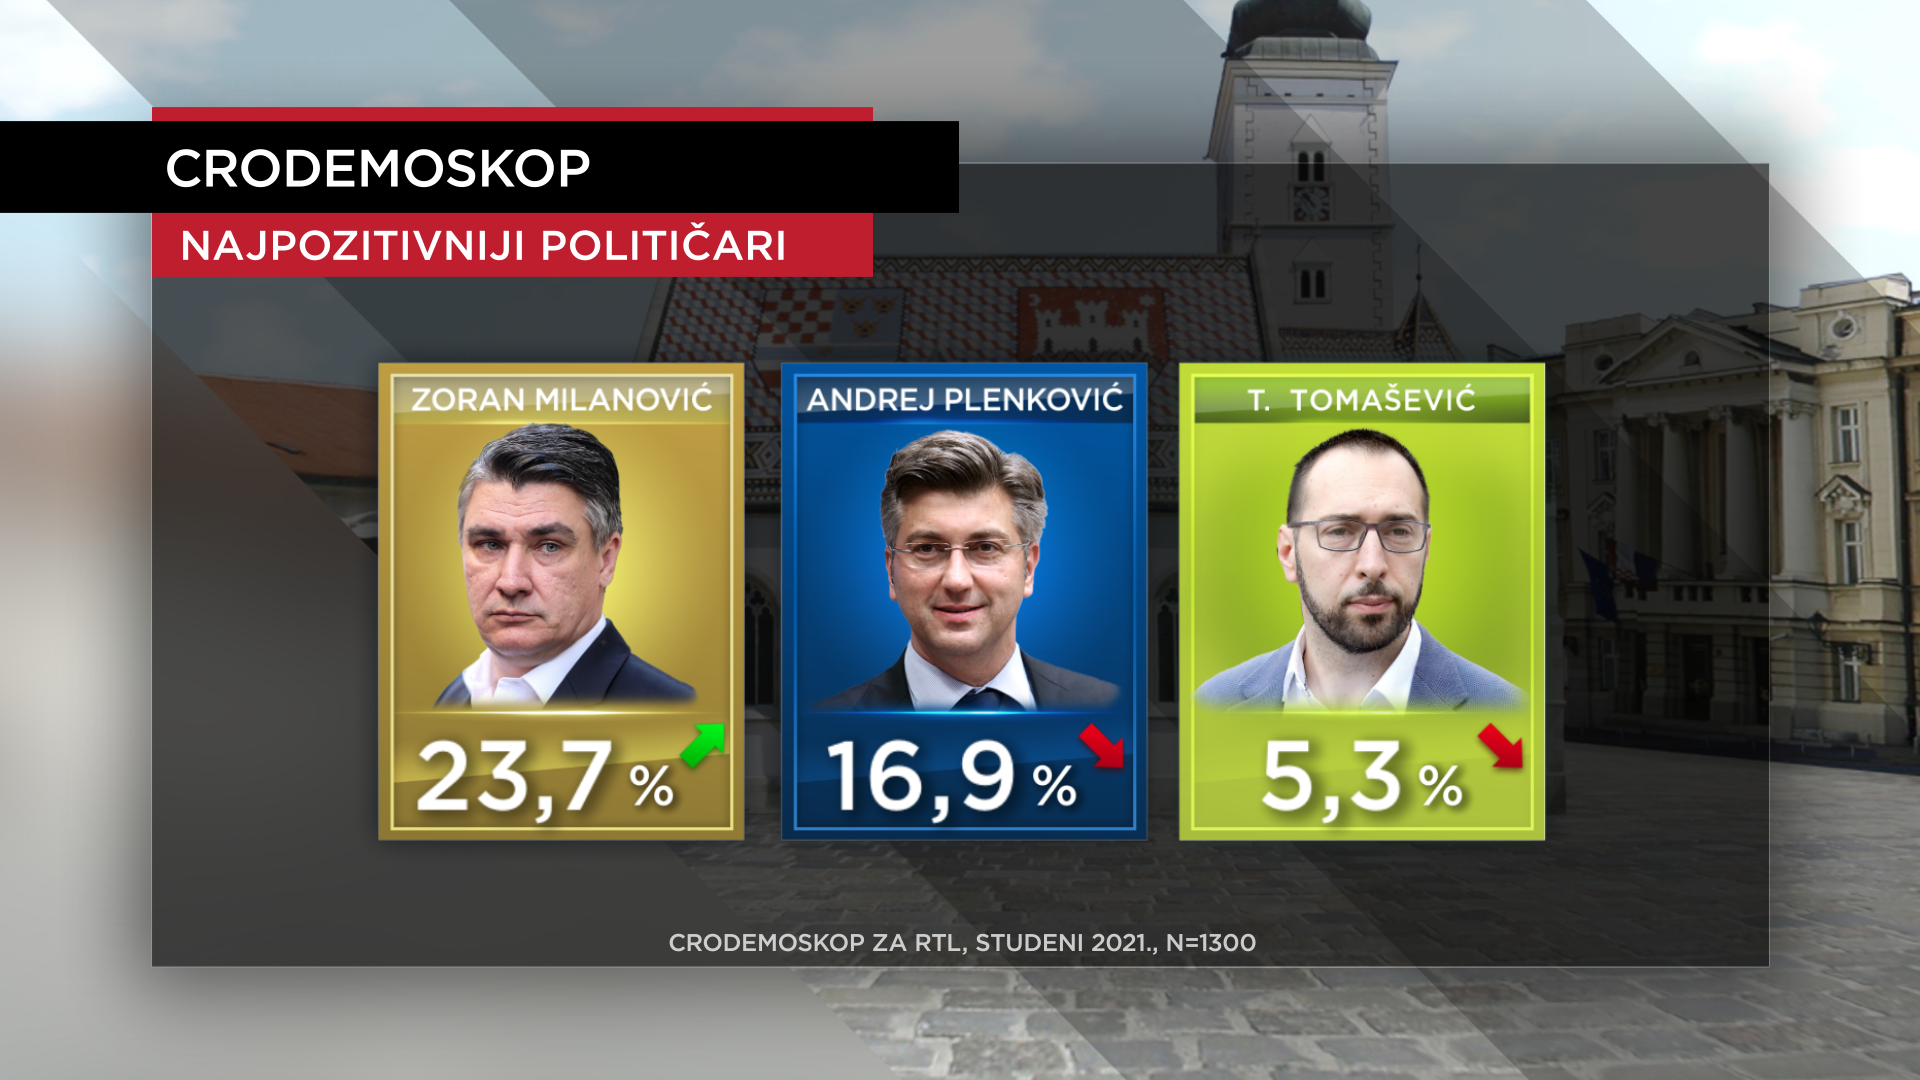 Najpozitivniji političar je i dalje Zoran Milanović, a Banožić je prvi put na listi najnegativnijih